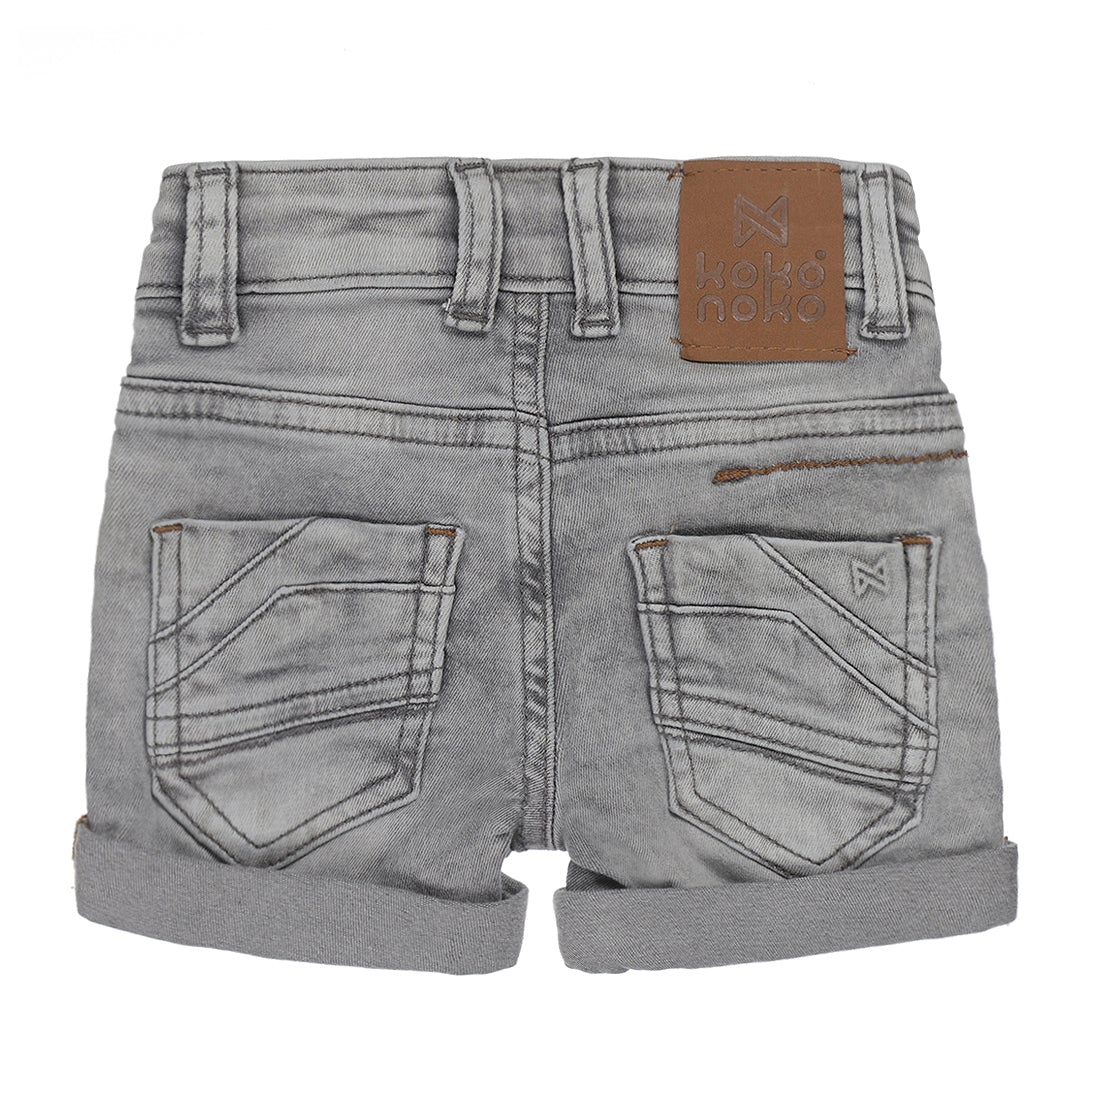 Jongens Jeans shorts van Koko Noko in de kleur Grey jeans in maat 128.